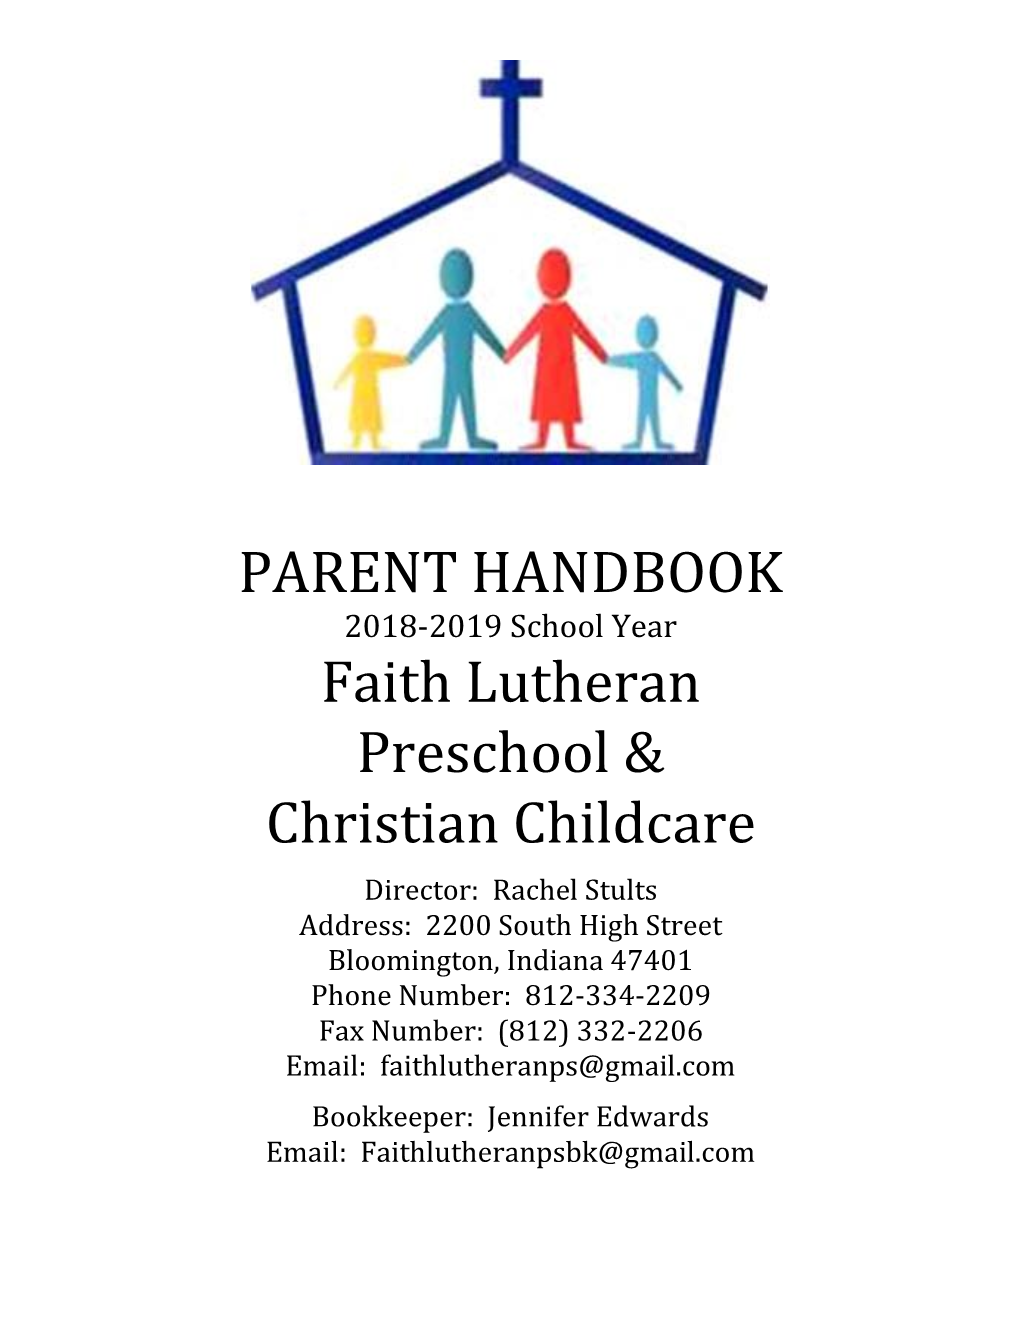 PARENT HANDBOOK Faith Lutheran Preschool & Christian Childcare